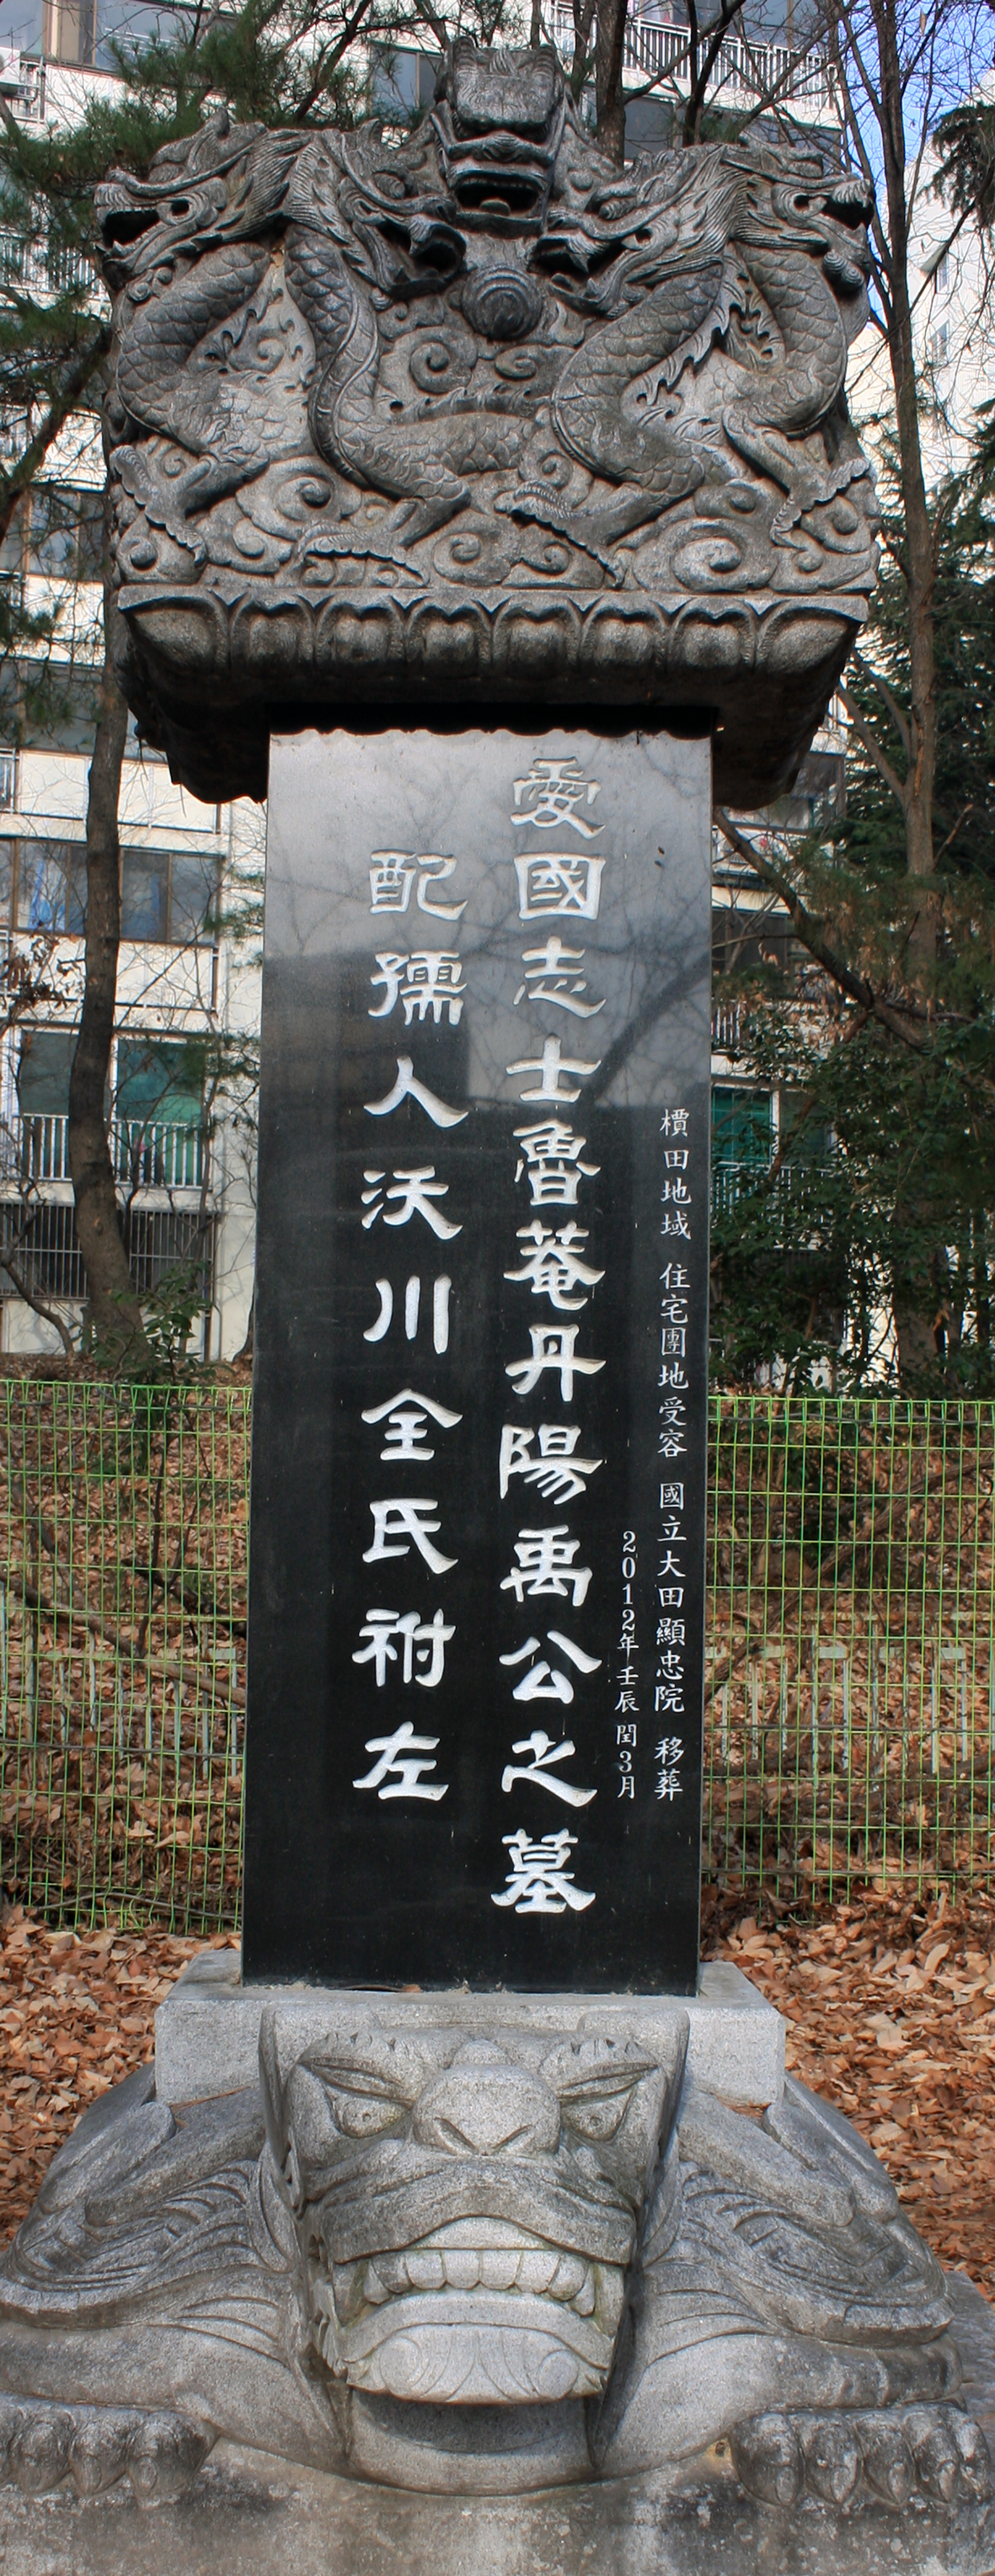 우하교 묘비